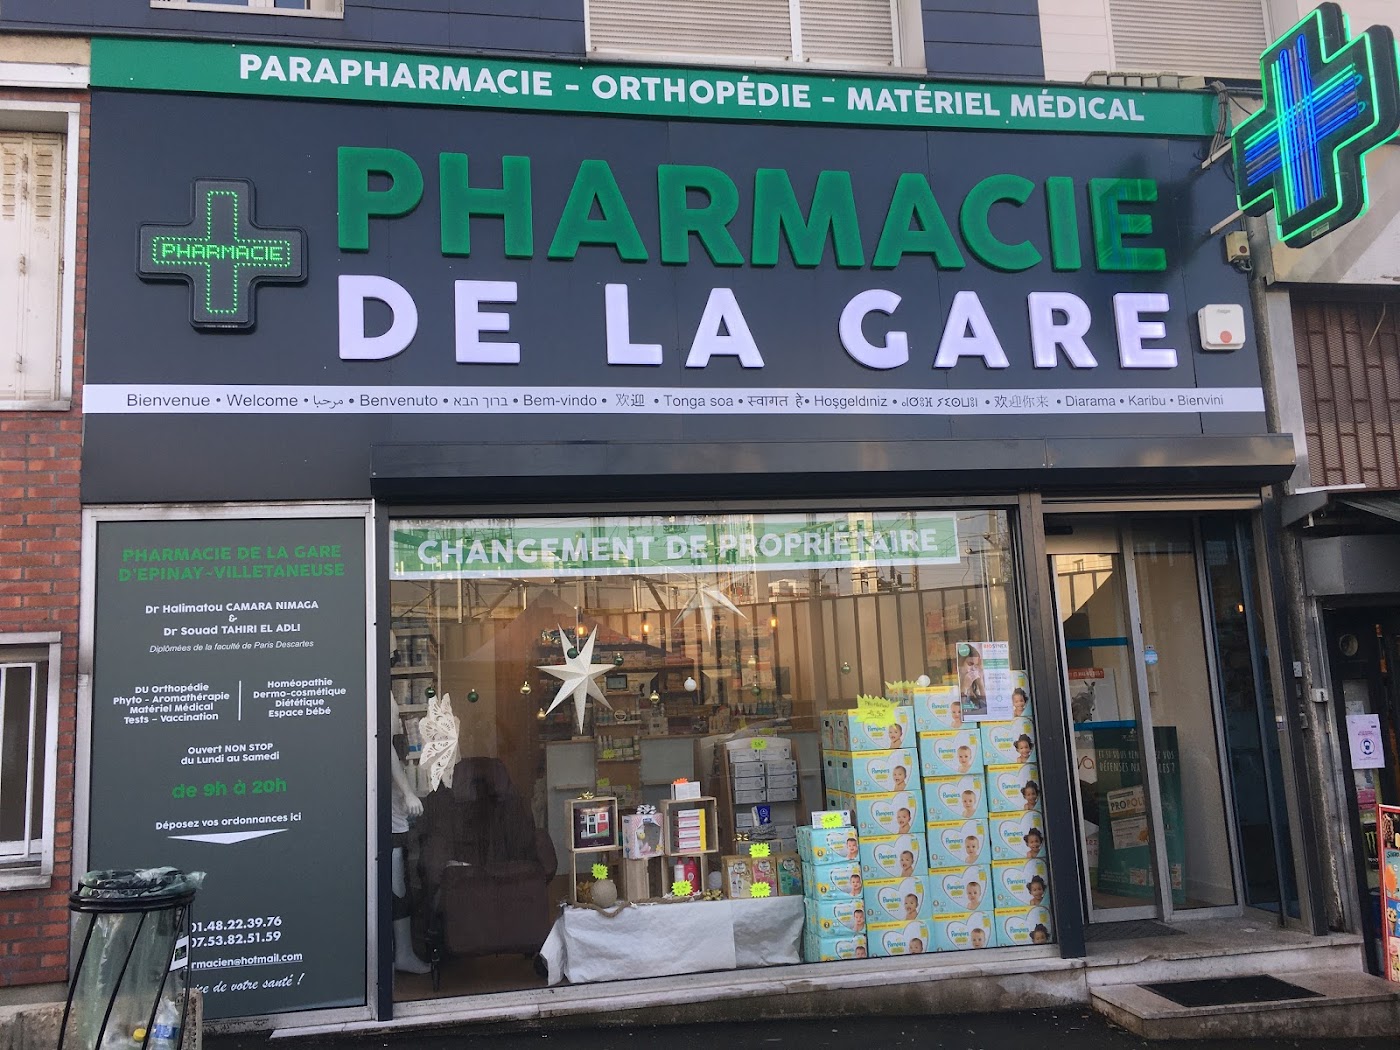 Pharmacie De La Gare d’Epinay-Villetaneuse